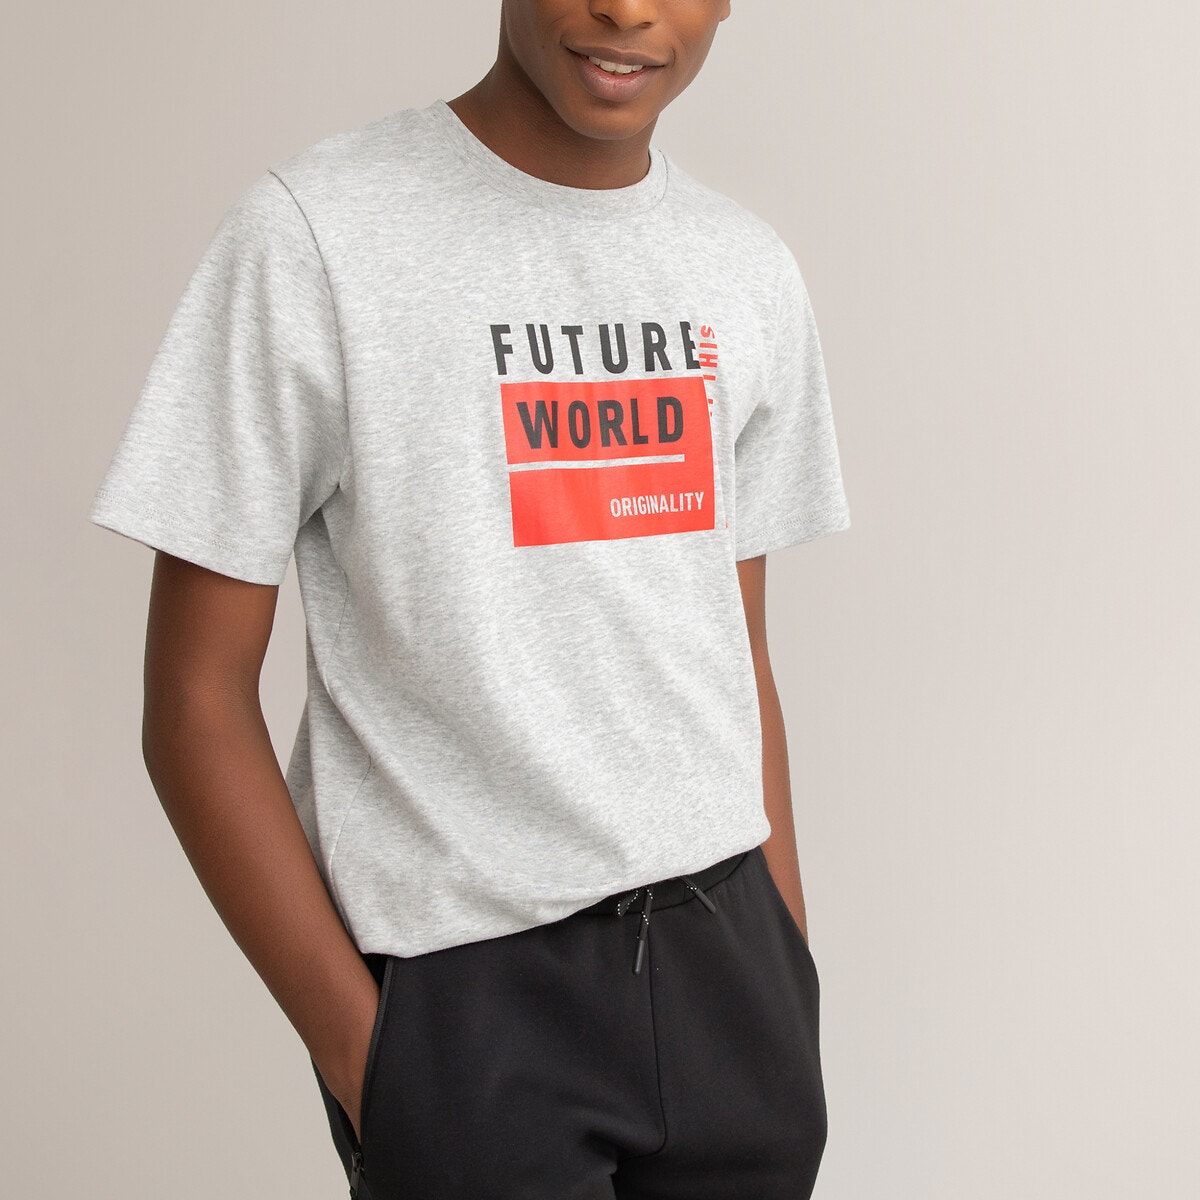 ΠΑΙΔΙ | Μπλούζες & Πουκάμισα | T-shirts Κοντομάνικο T-shirt από βιολογικό βαμβάκι, 10-18 ετών